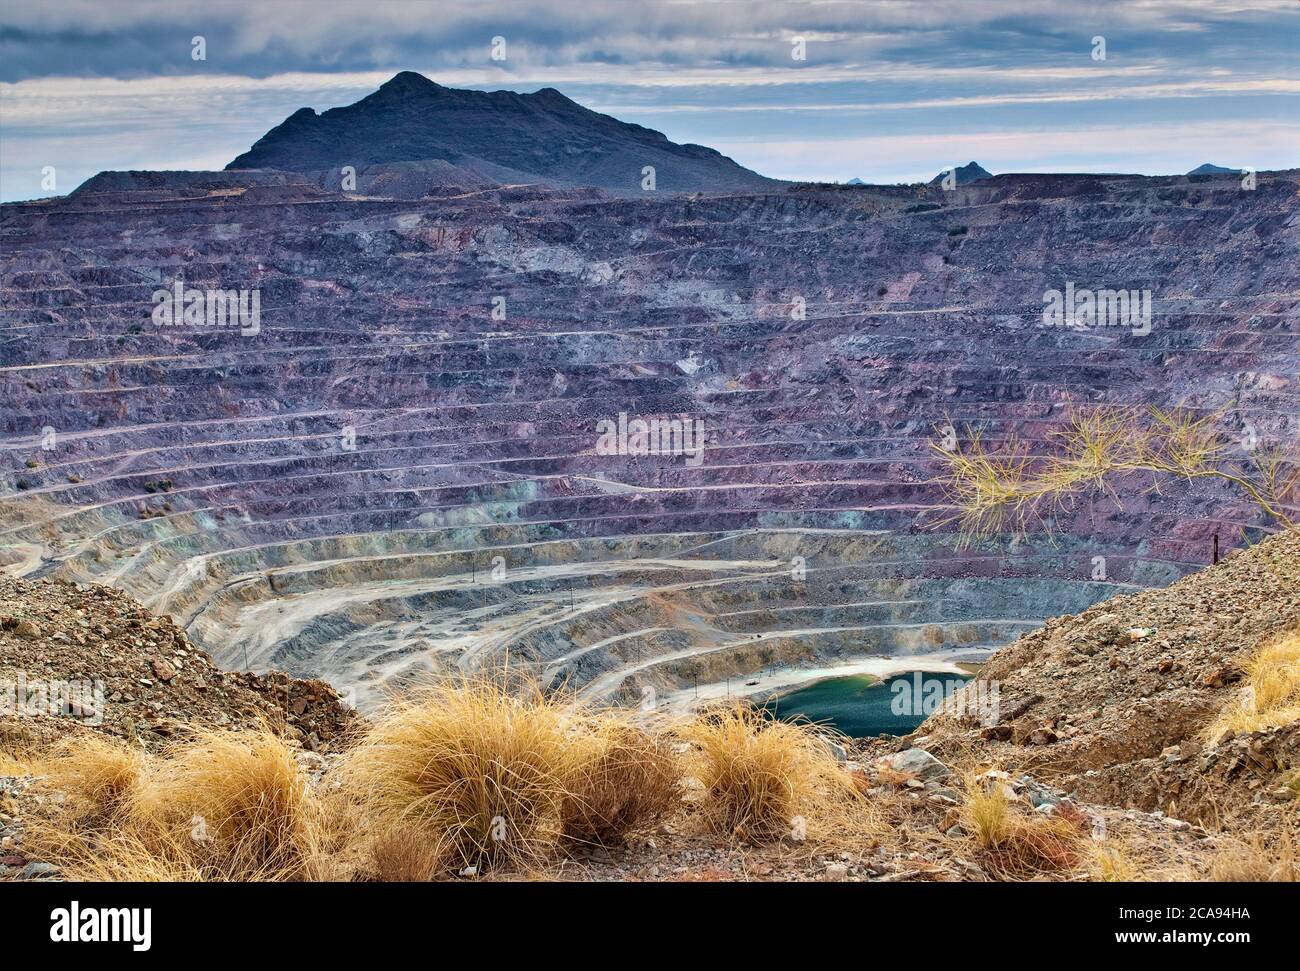 Phelps Dodge mina de cobre a cielo abierto, ahora cerrada, en Ajo, Arizona, EE.UU Foto de stock